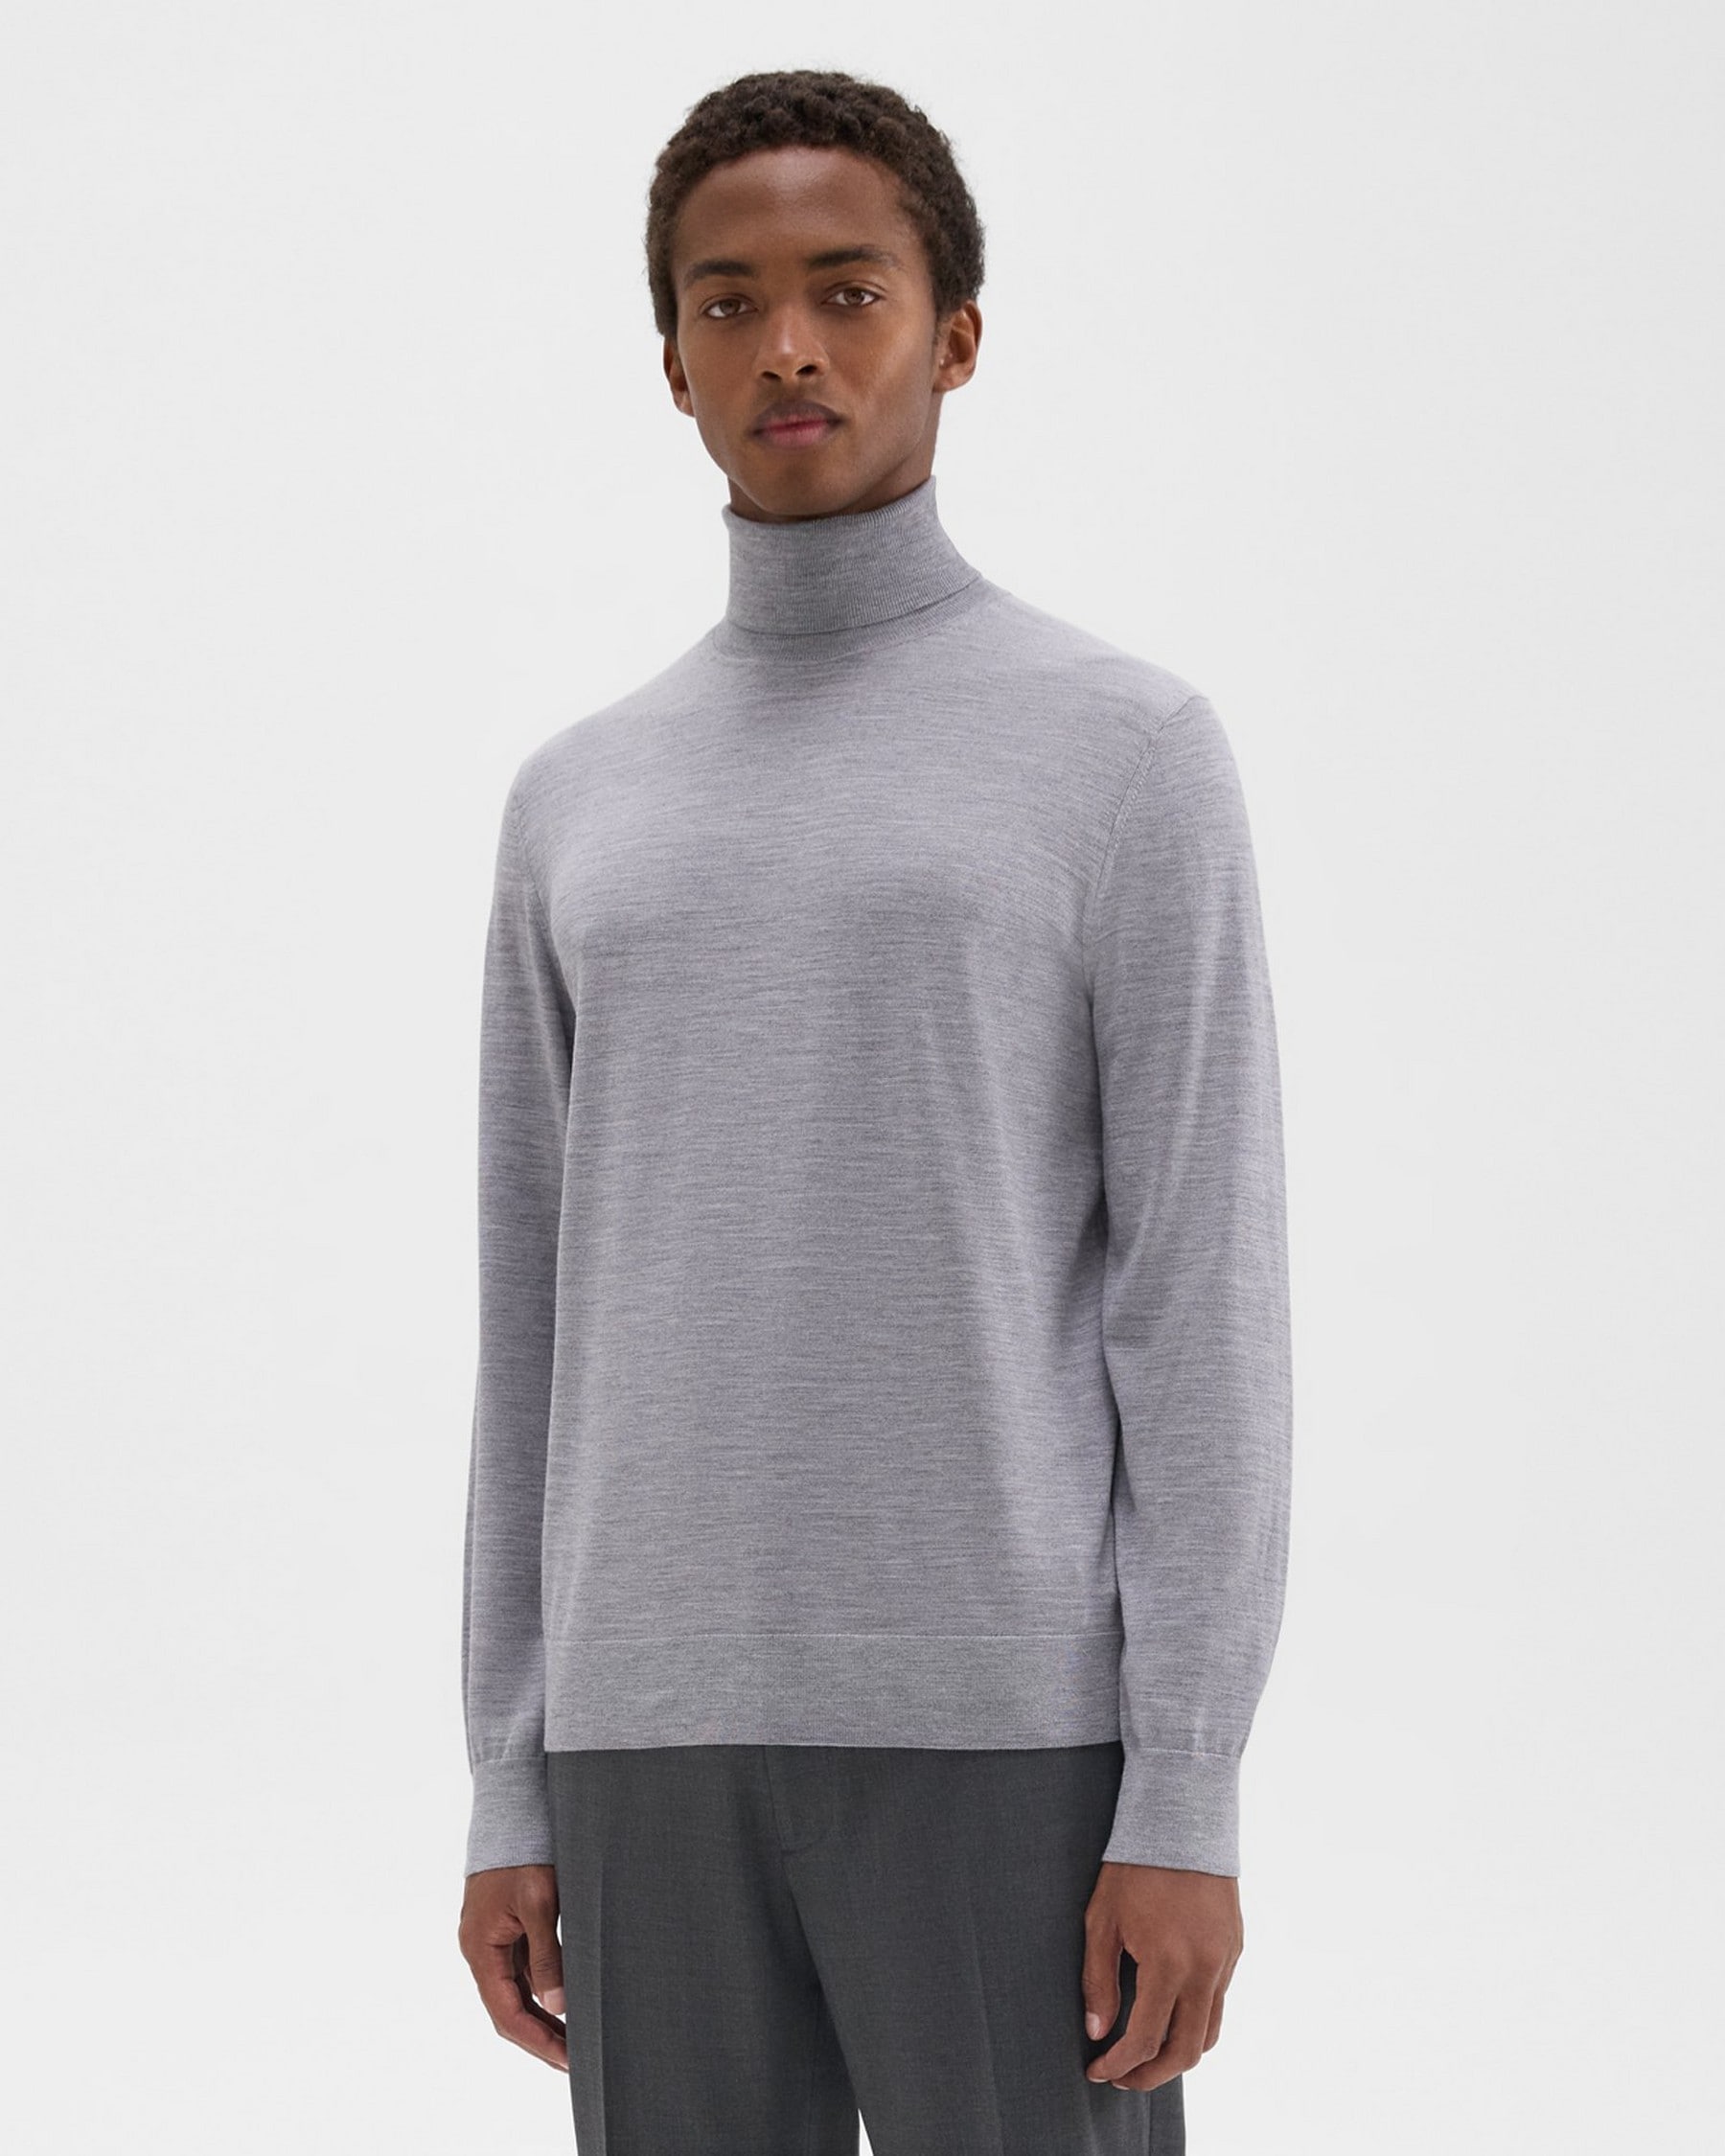 Turtleneck Sweater in Regal Wool